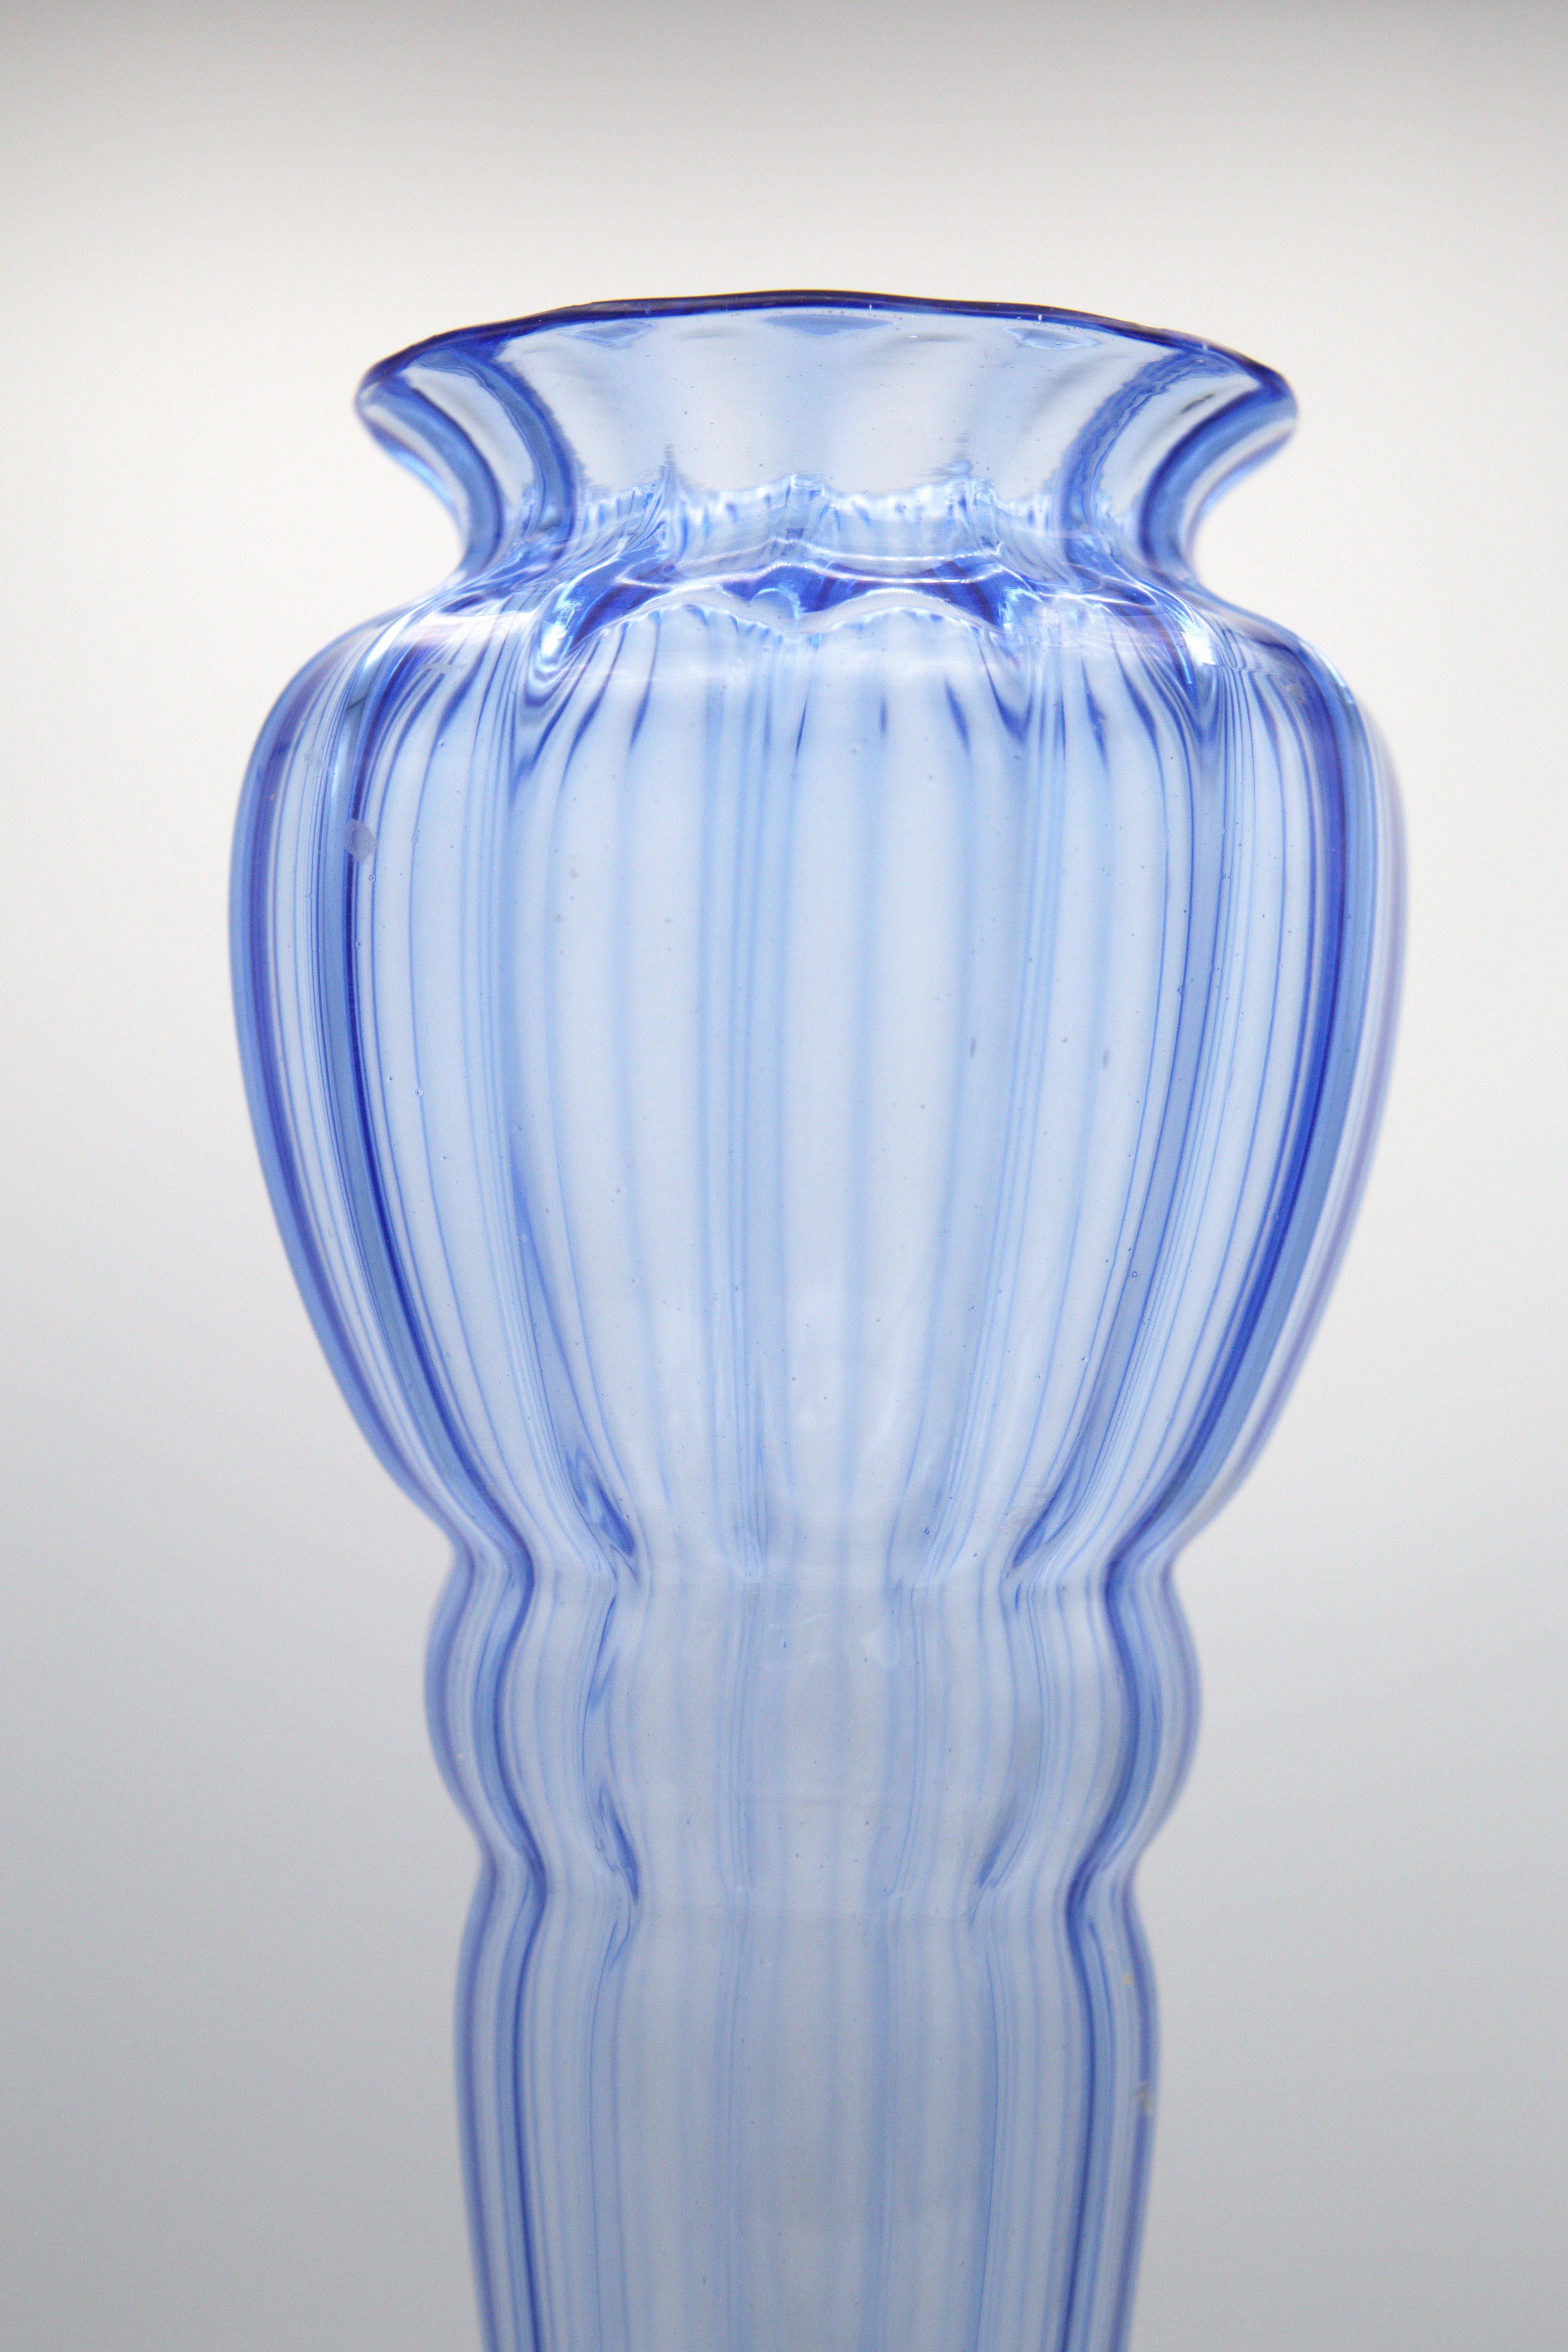 Splendide vase en verre conçu par Napoleone Martinuzzi pour Vittorio Zecchin dans les années 30, de fabrication italienne raffinée.
Le vase est entièrement en verre bleu, très élégant et raffiné.
Le vase se développe en hauteur à partir d'une base